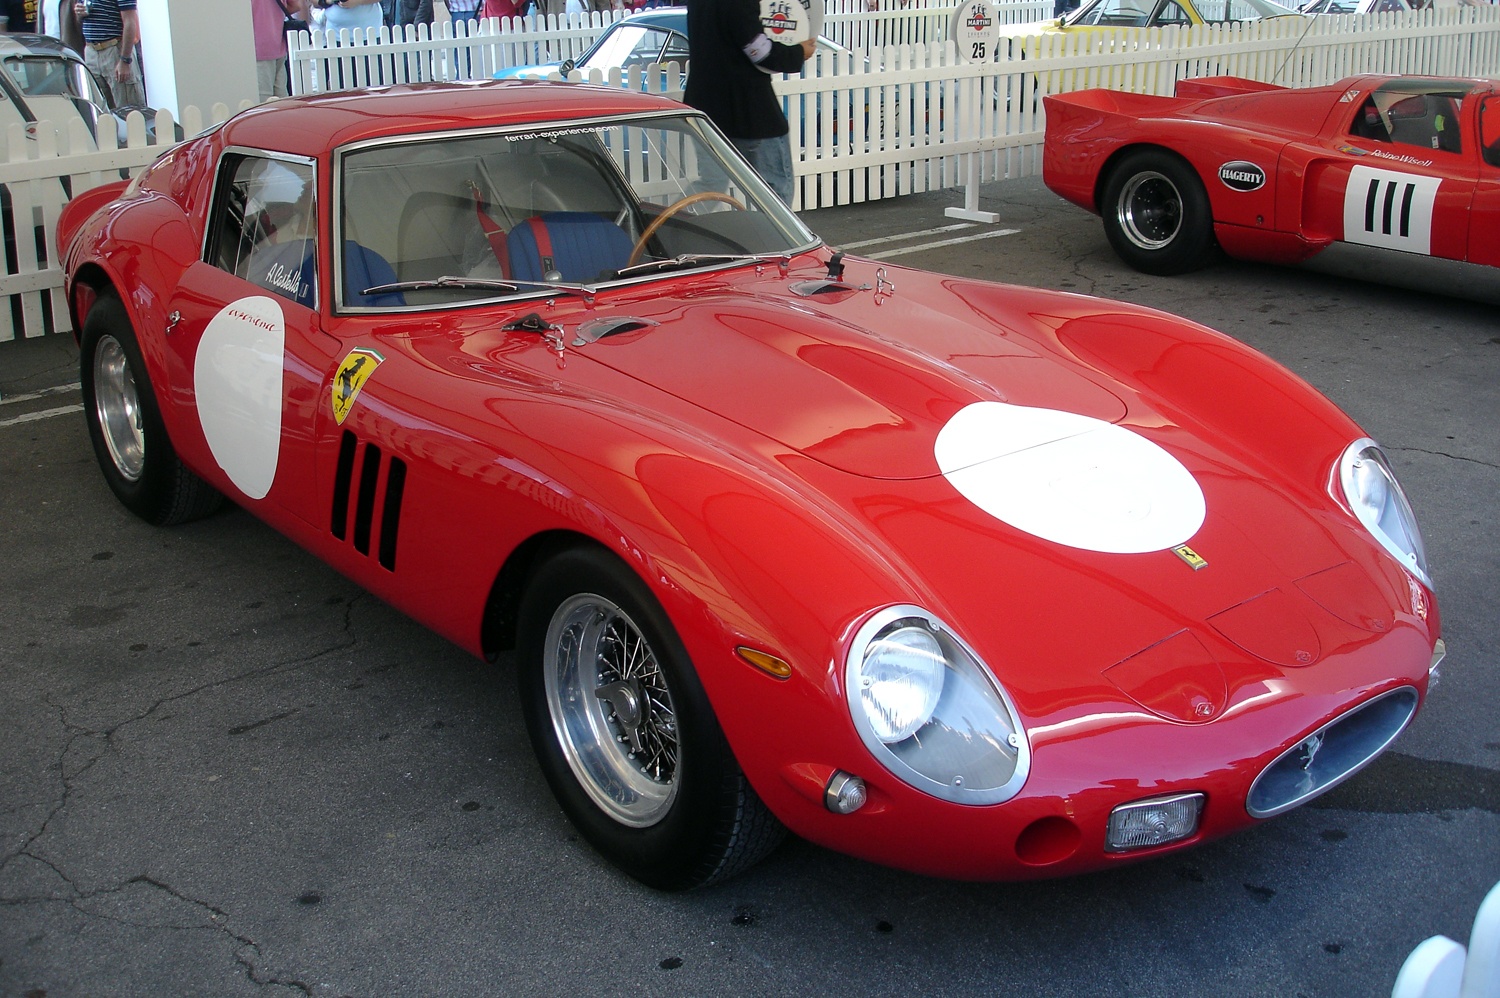 24.03.1962 Maret 250, XNUMX | Debut balap Ferrari GTO